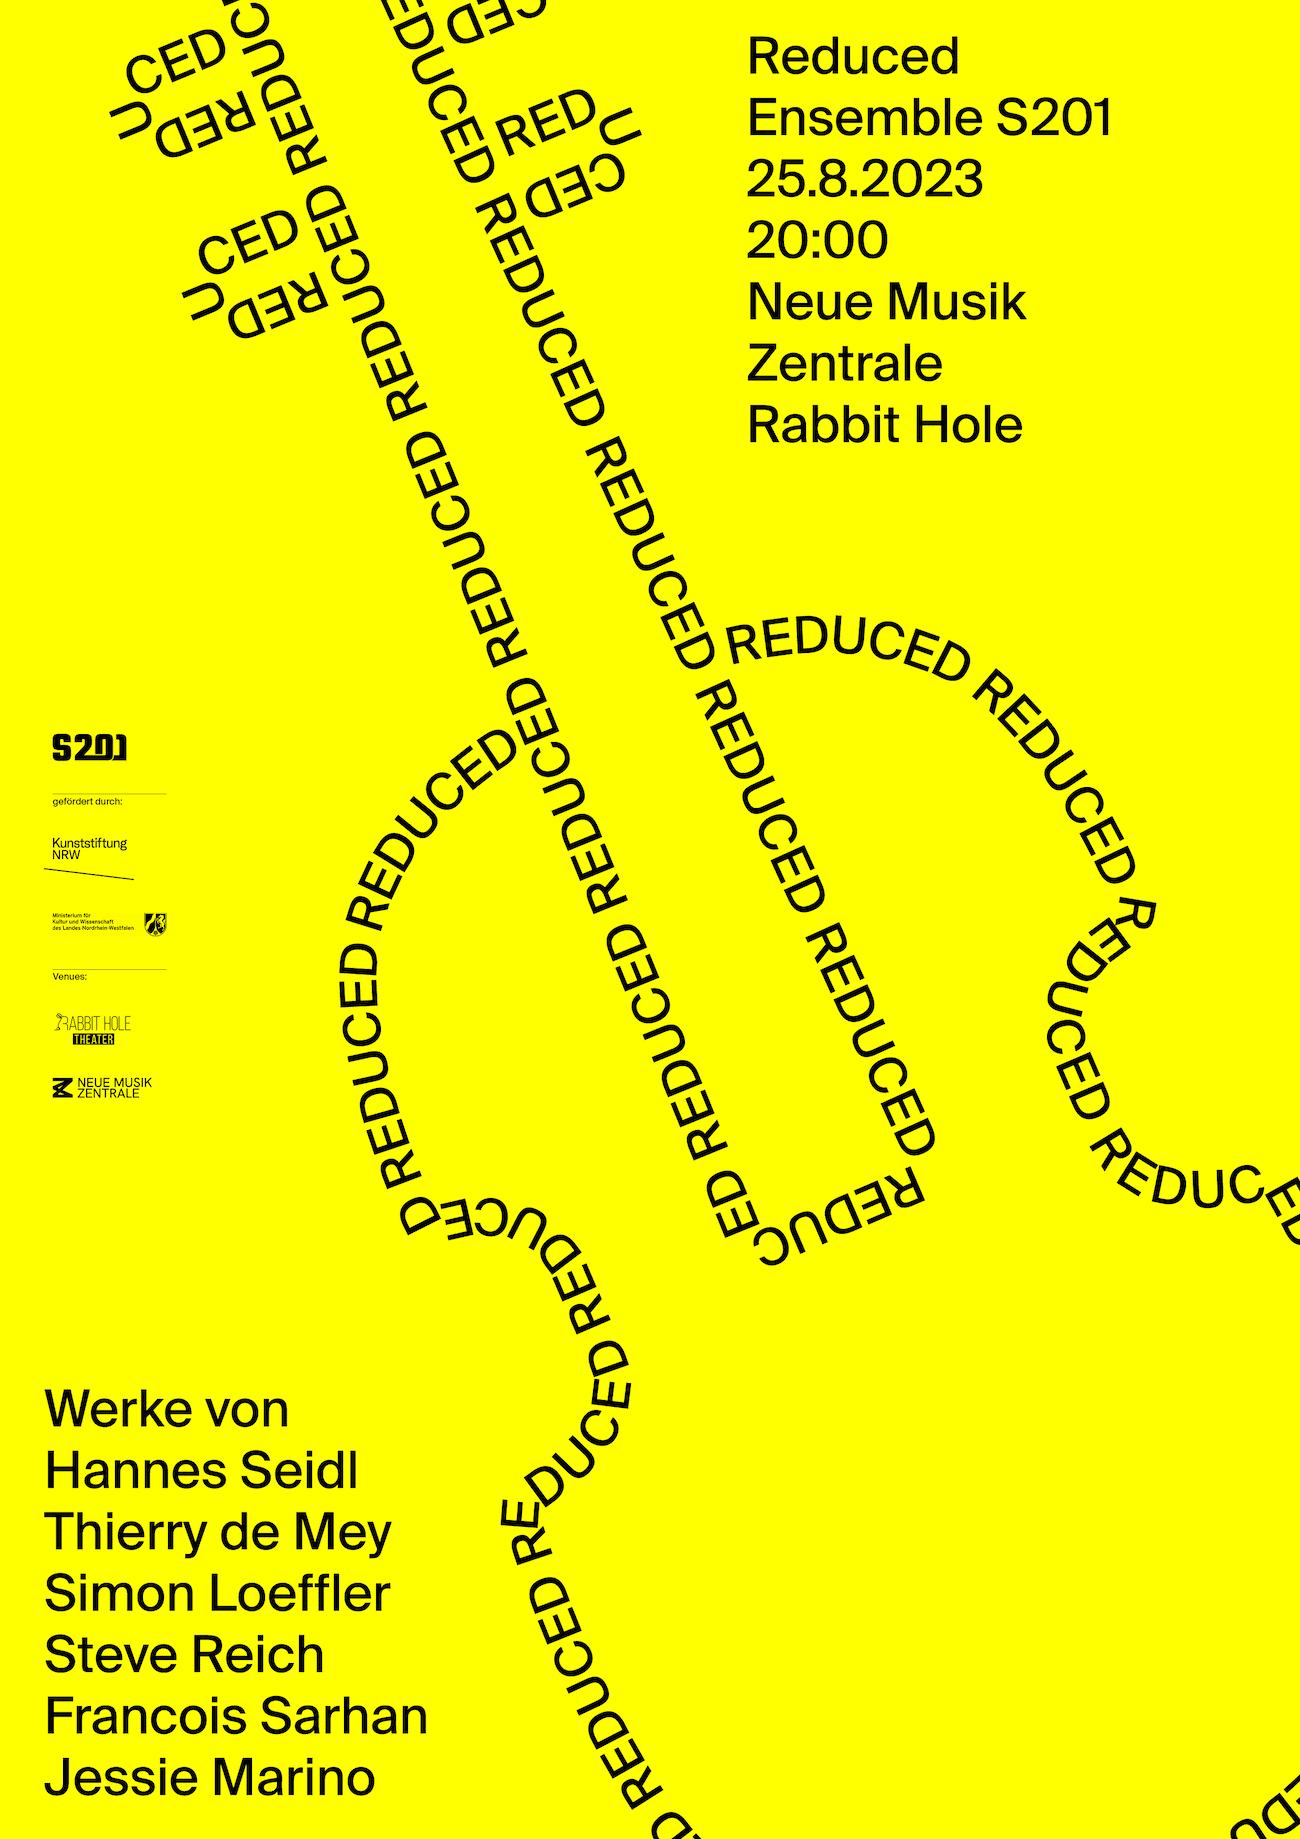 Reduced-Plakatdesign mit schwarzer Typografie auf Gelb vom Ensemble201 und Philip Jursch